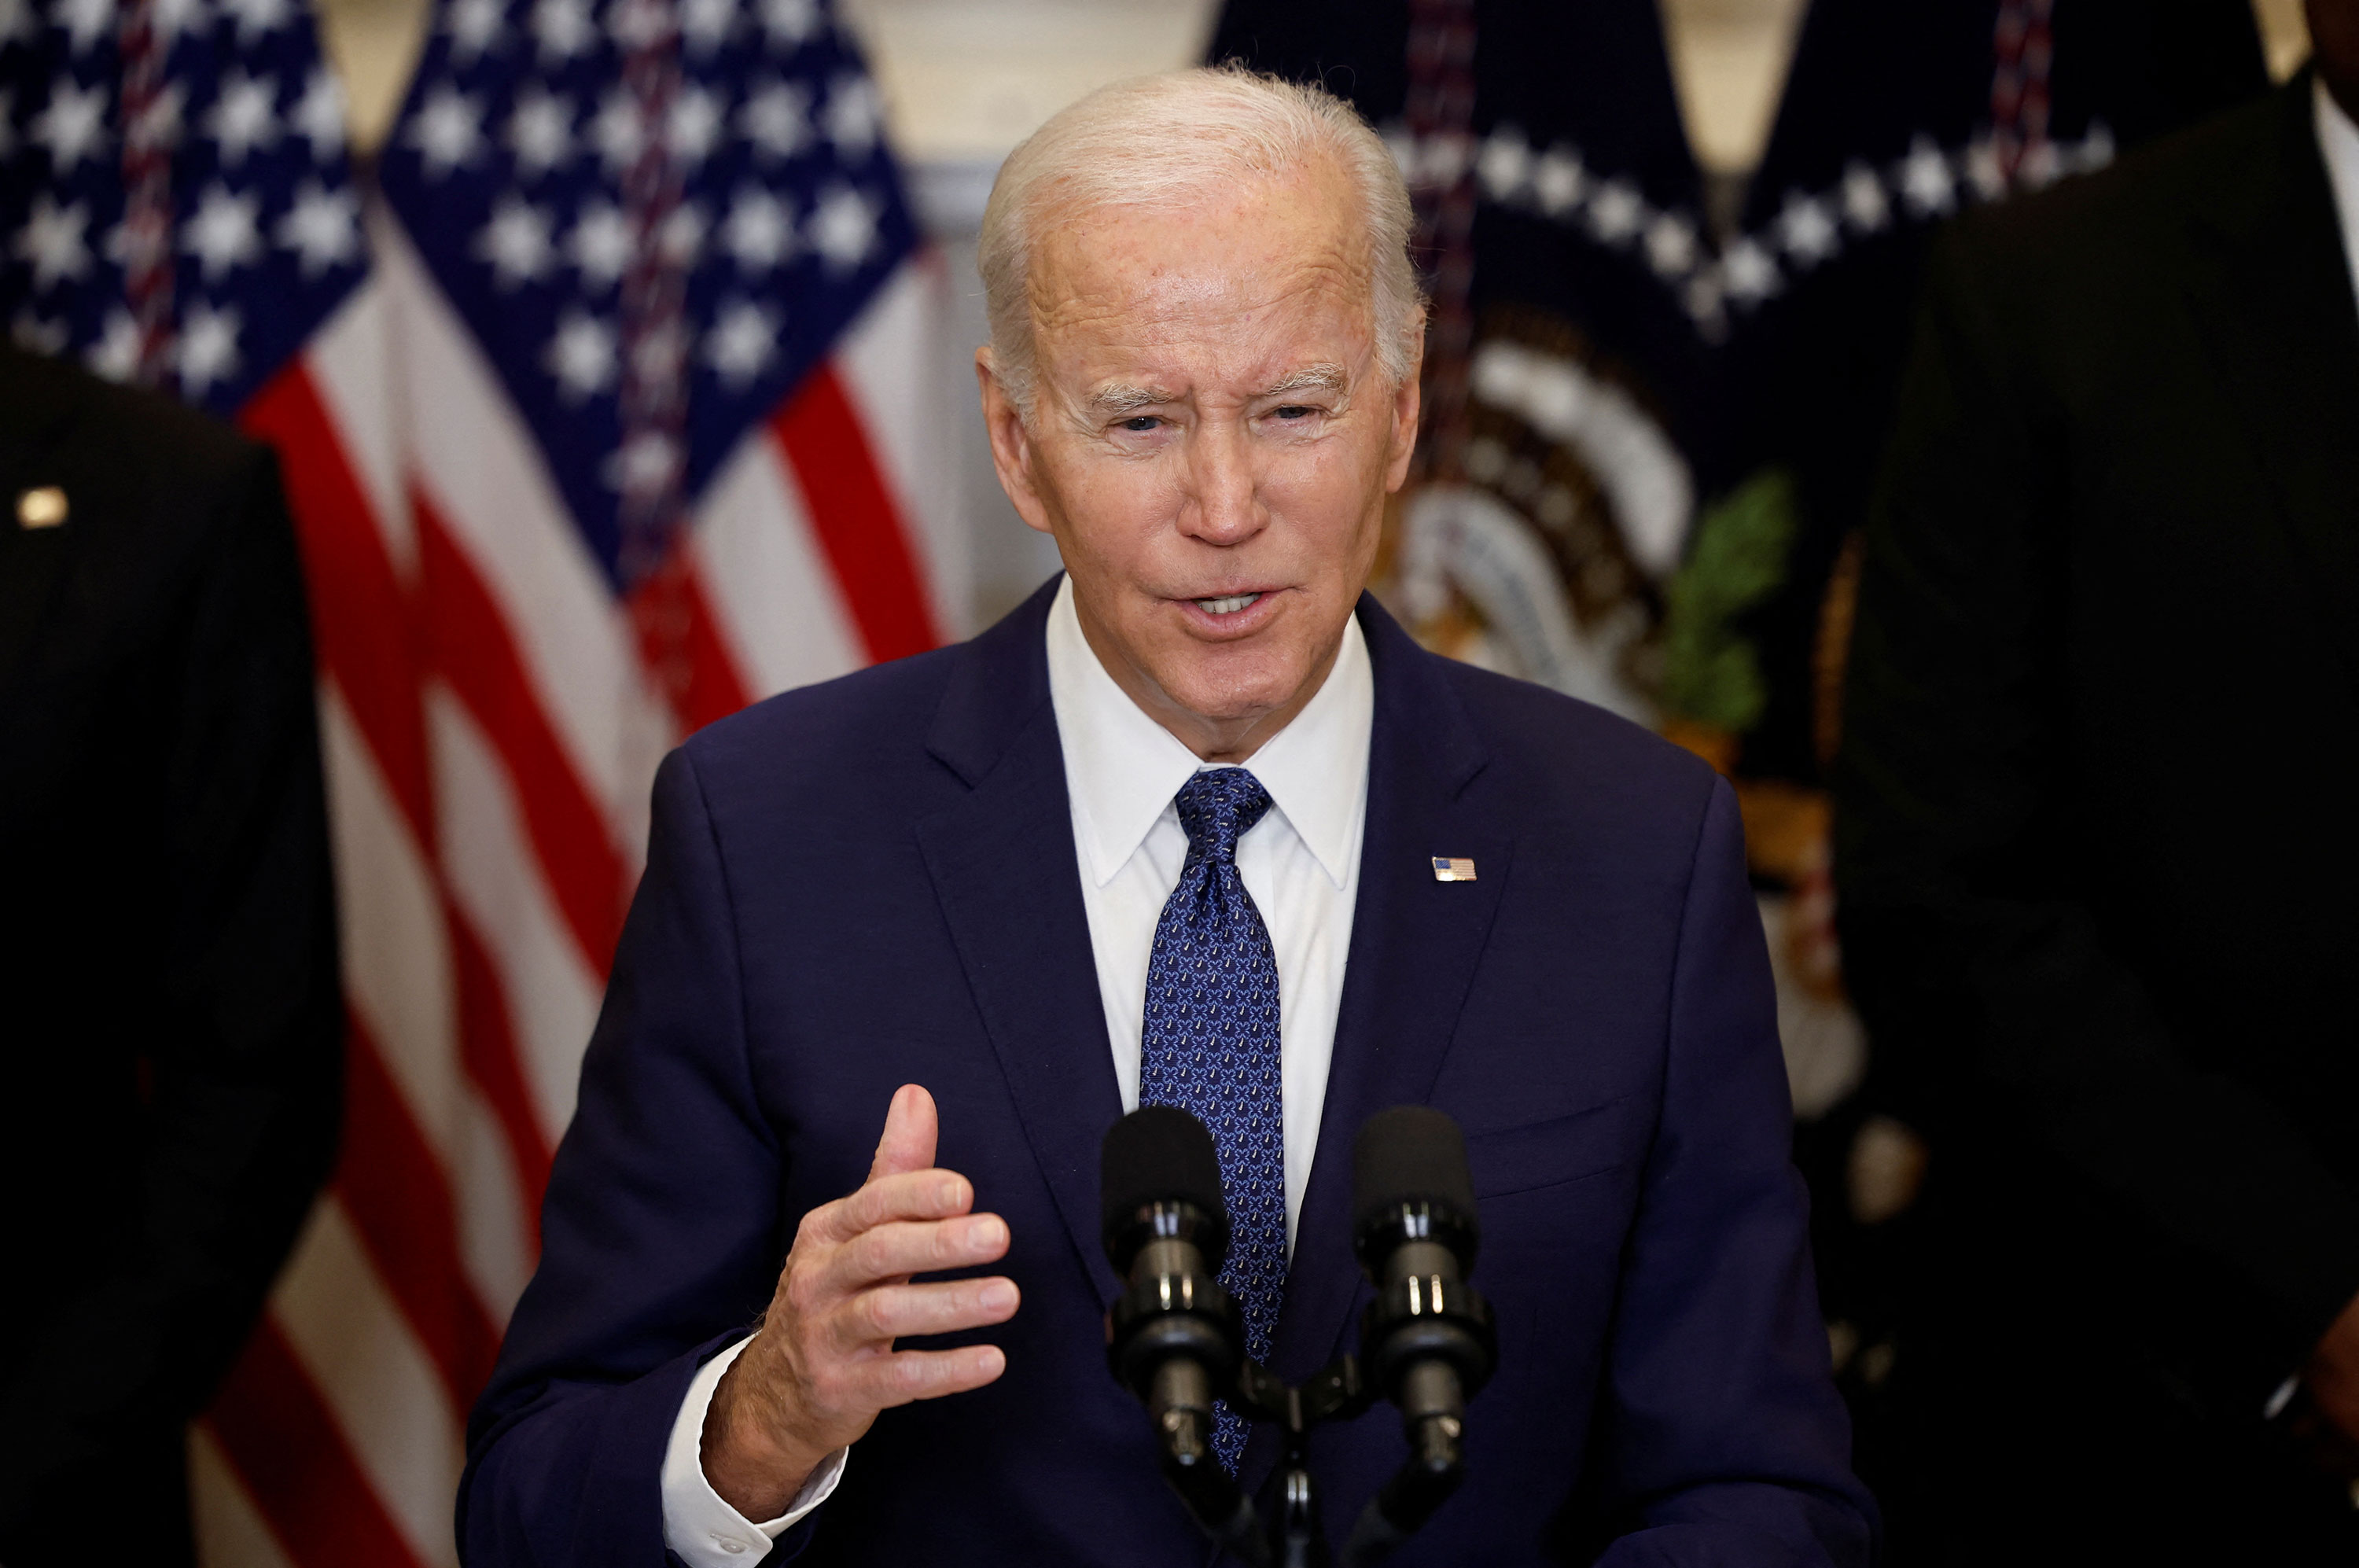 President Joe Biden speaks from the White House on Wednesday.